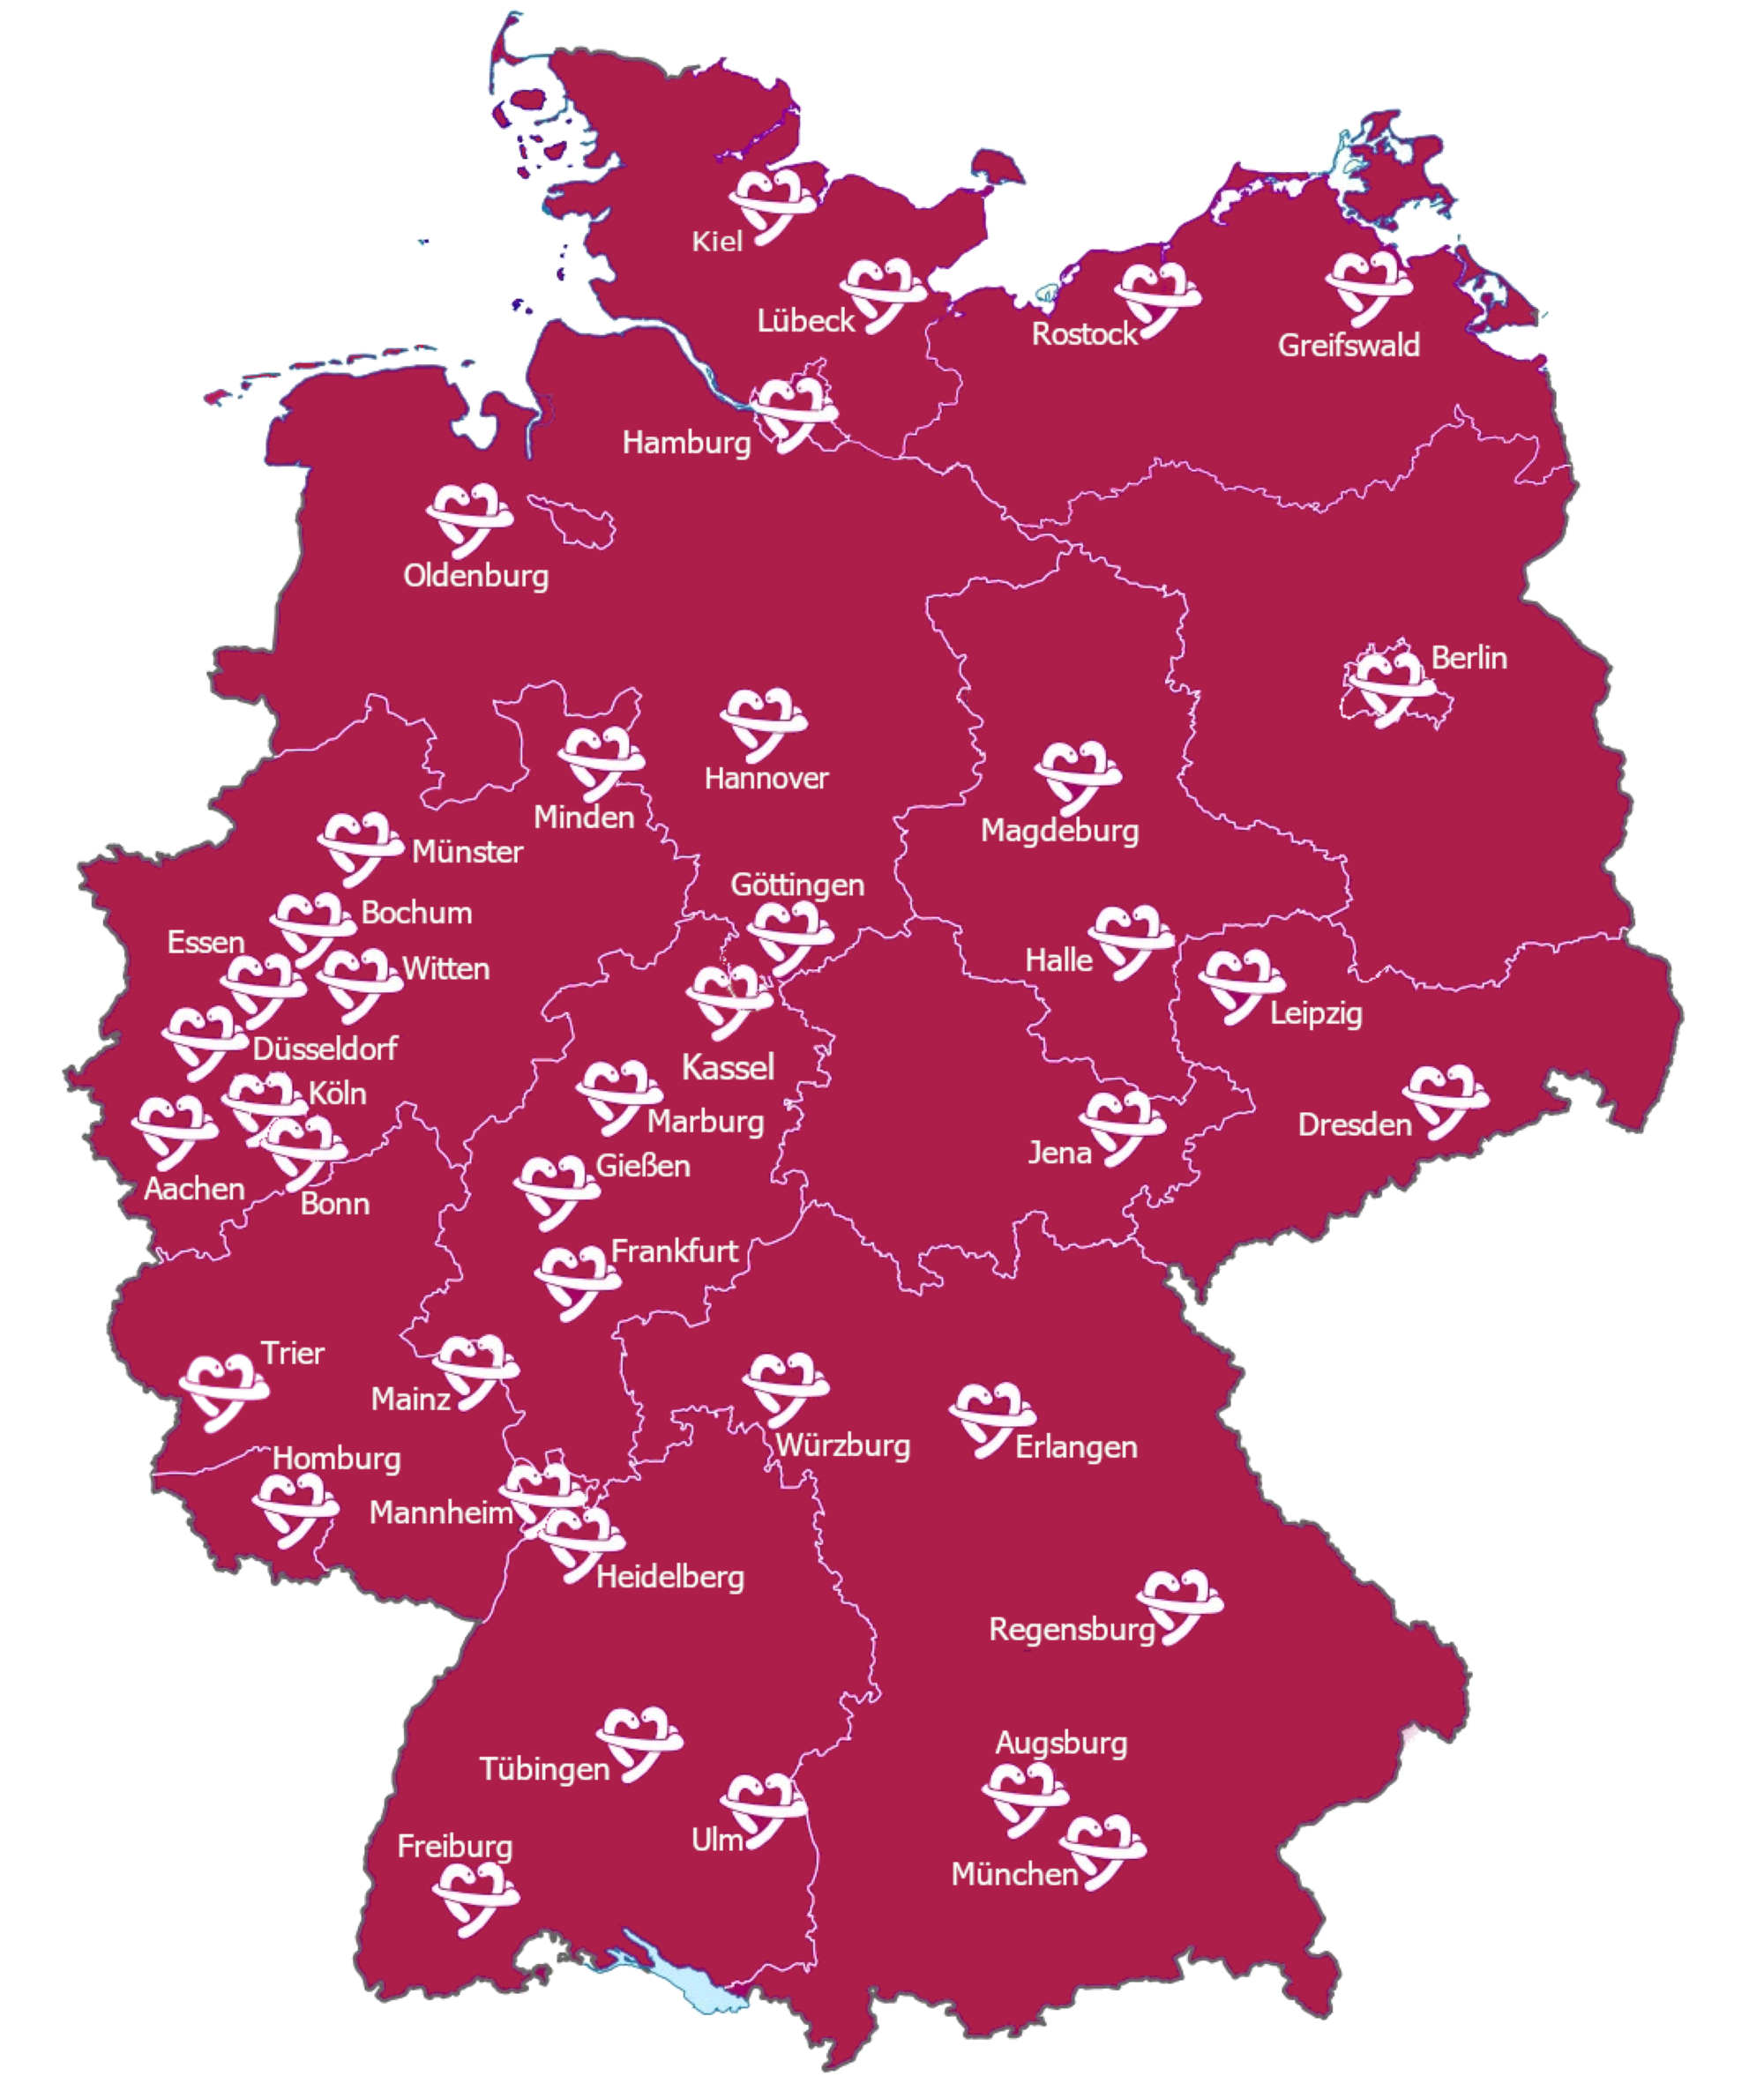 Landkarte von Deutschland auf der die Lokalgruppen verzeichnet sind.